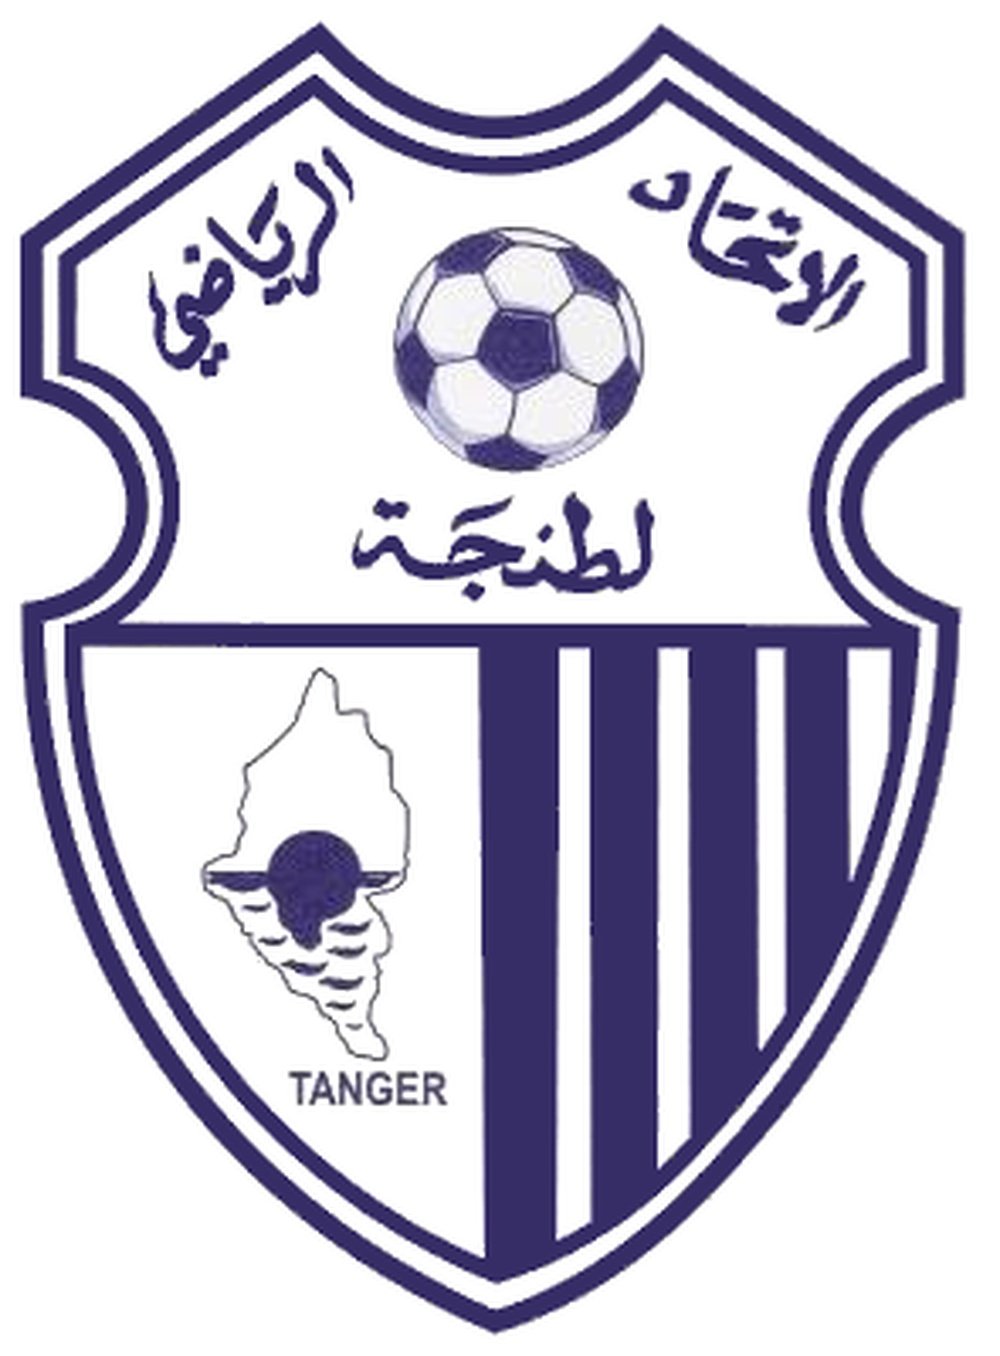 El escudo del Ittihad, equipo de Tánger que ha invitado al Athletic a un partido amistoso. Wikipedia.